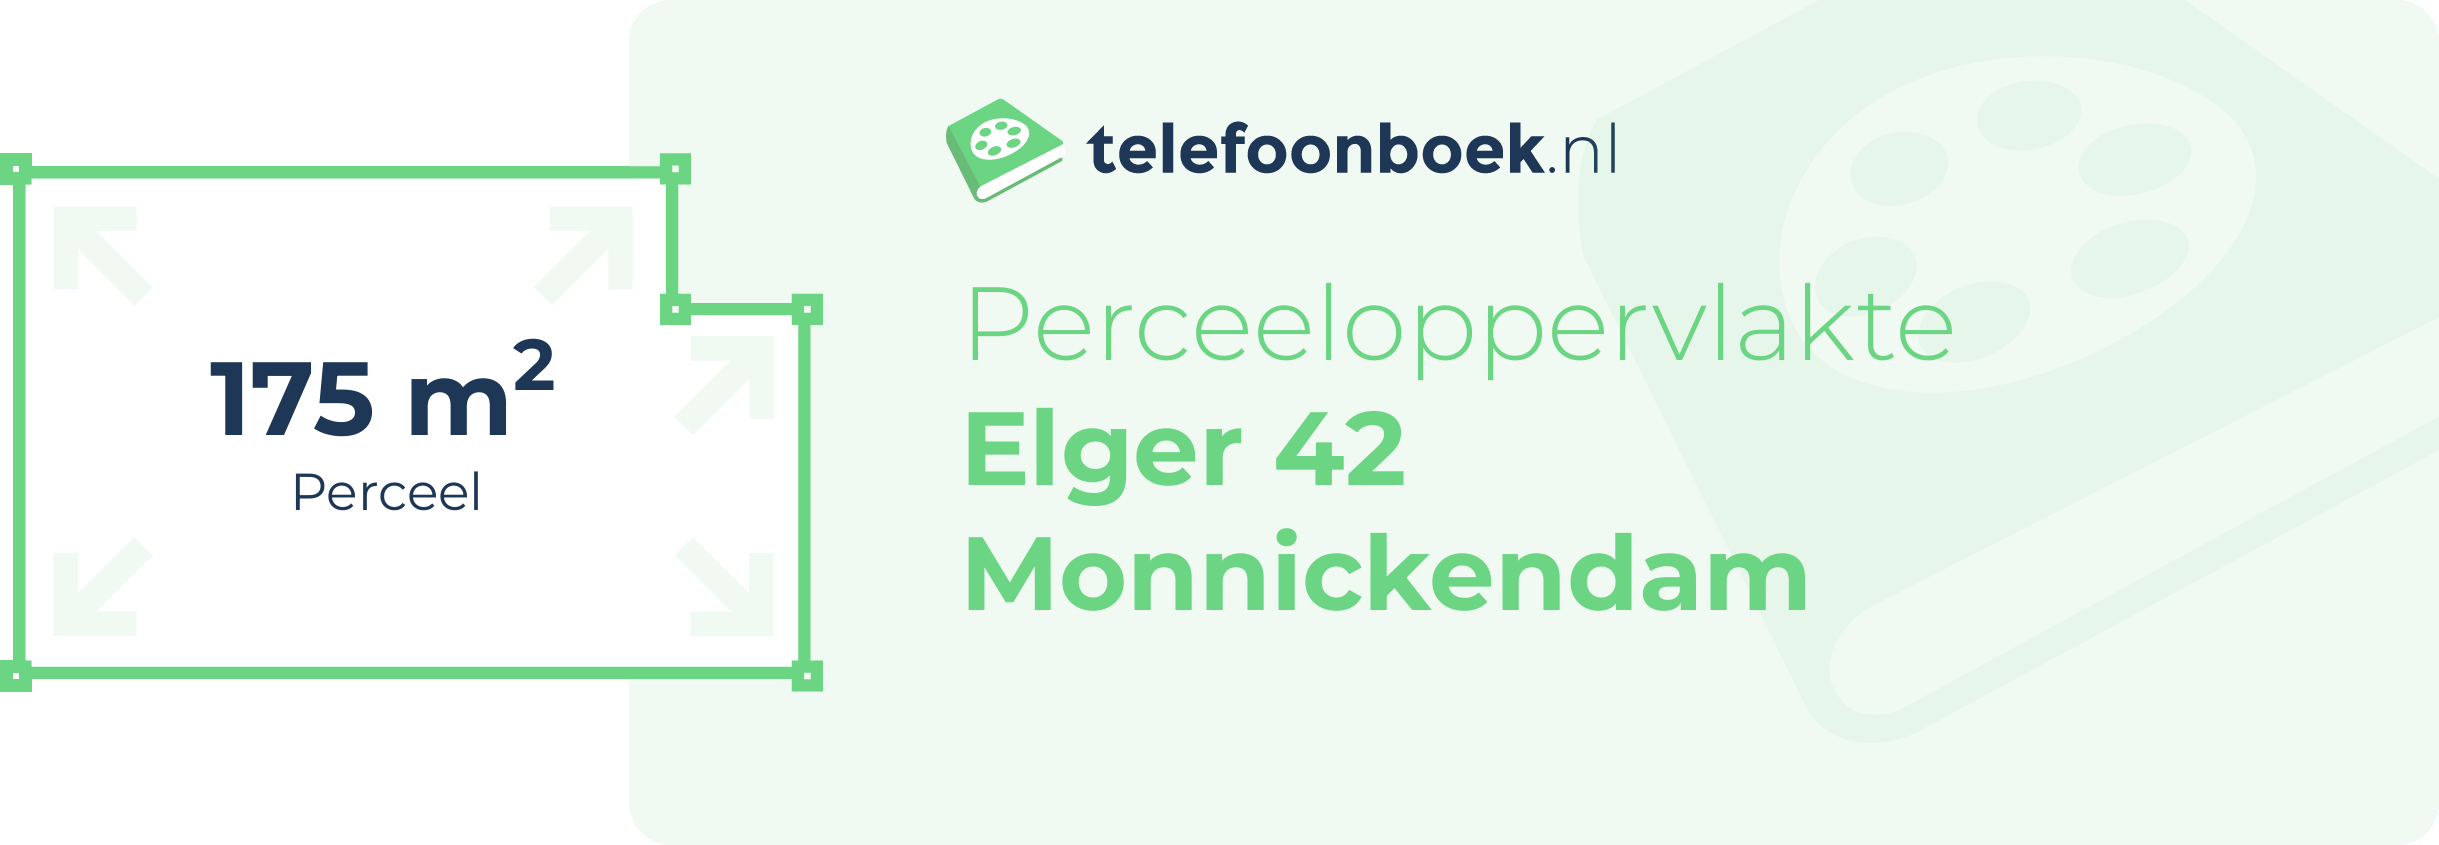 Perceeloppervlakte Elger 42 Monnickendam